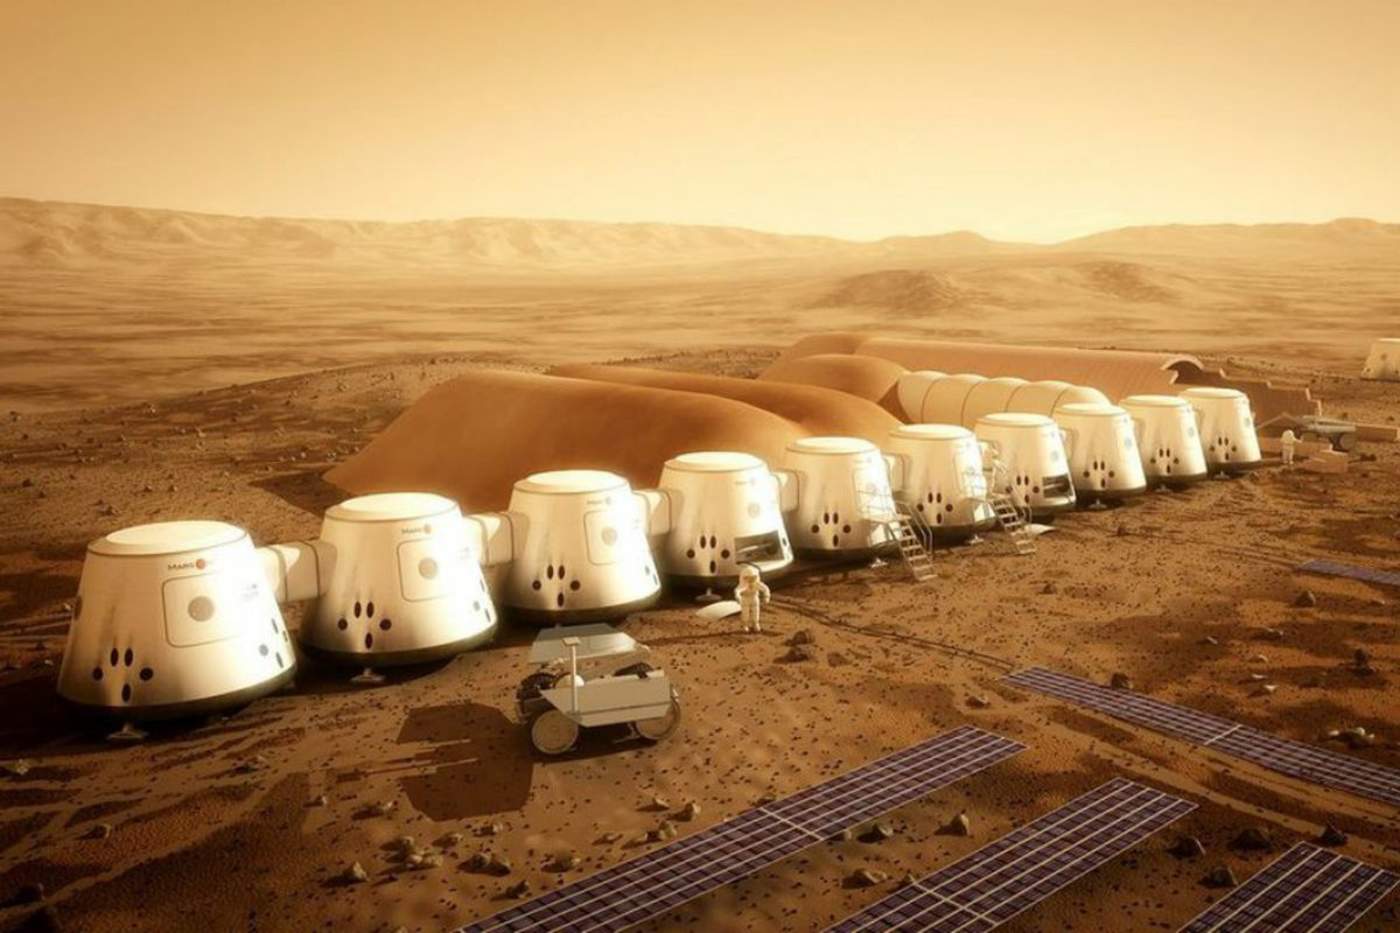 Mars One señaló que seguirá los contactos con distintas compañías y organizaciones con el fin de seguir preparando el viaje a Marte, aunque centrada sobre todo en su divulgación al público. (ESPECIAL)